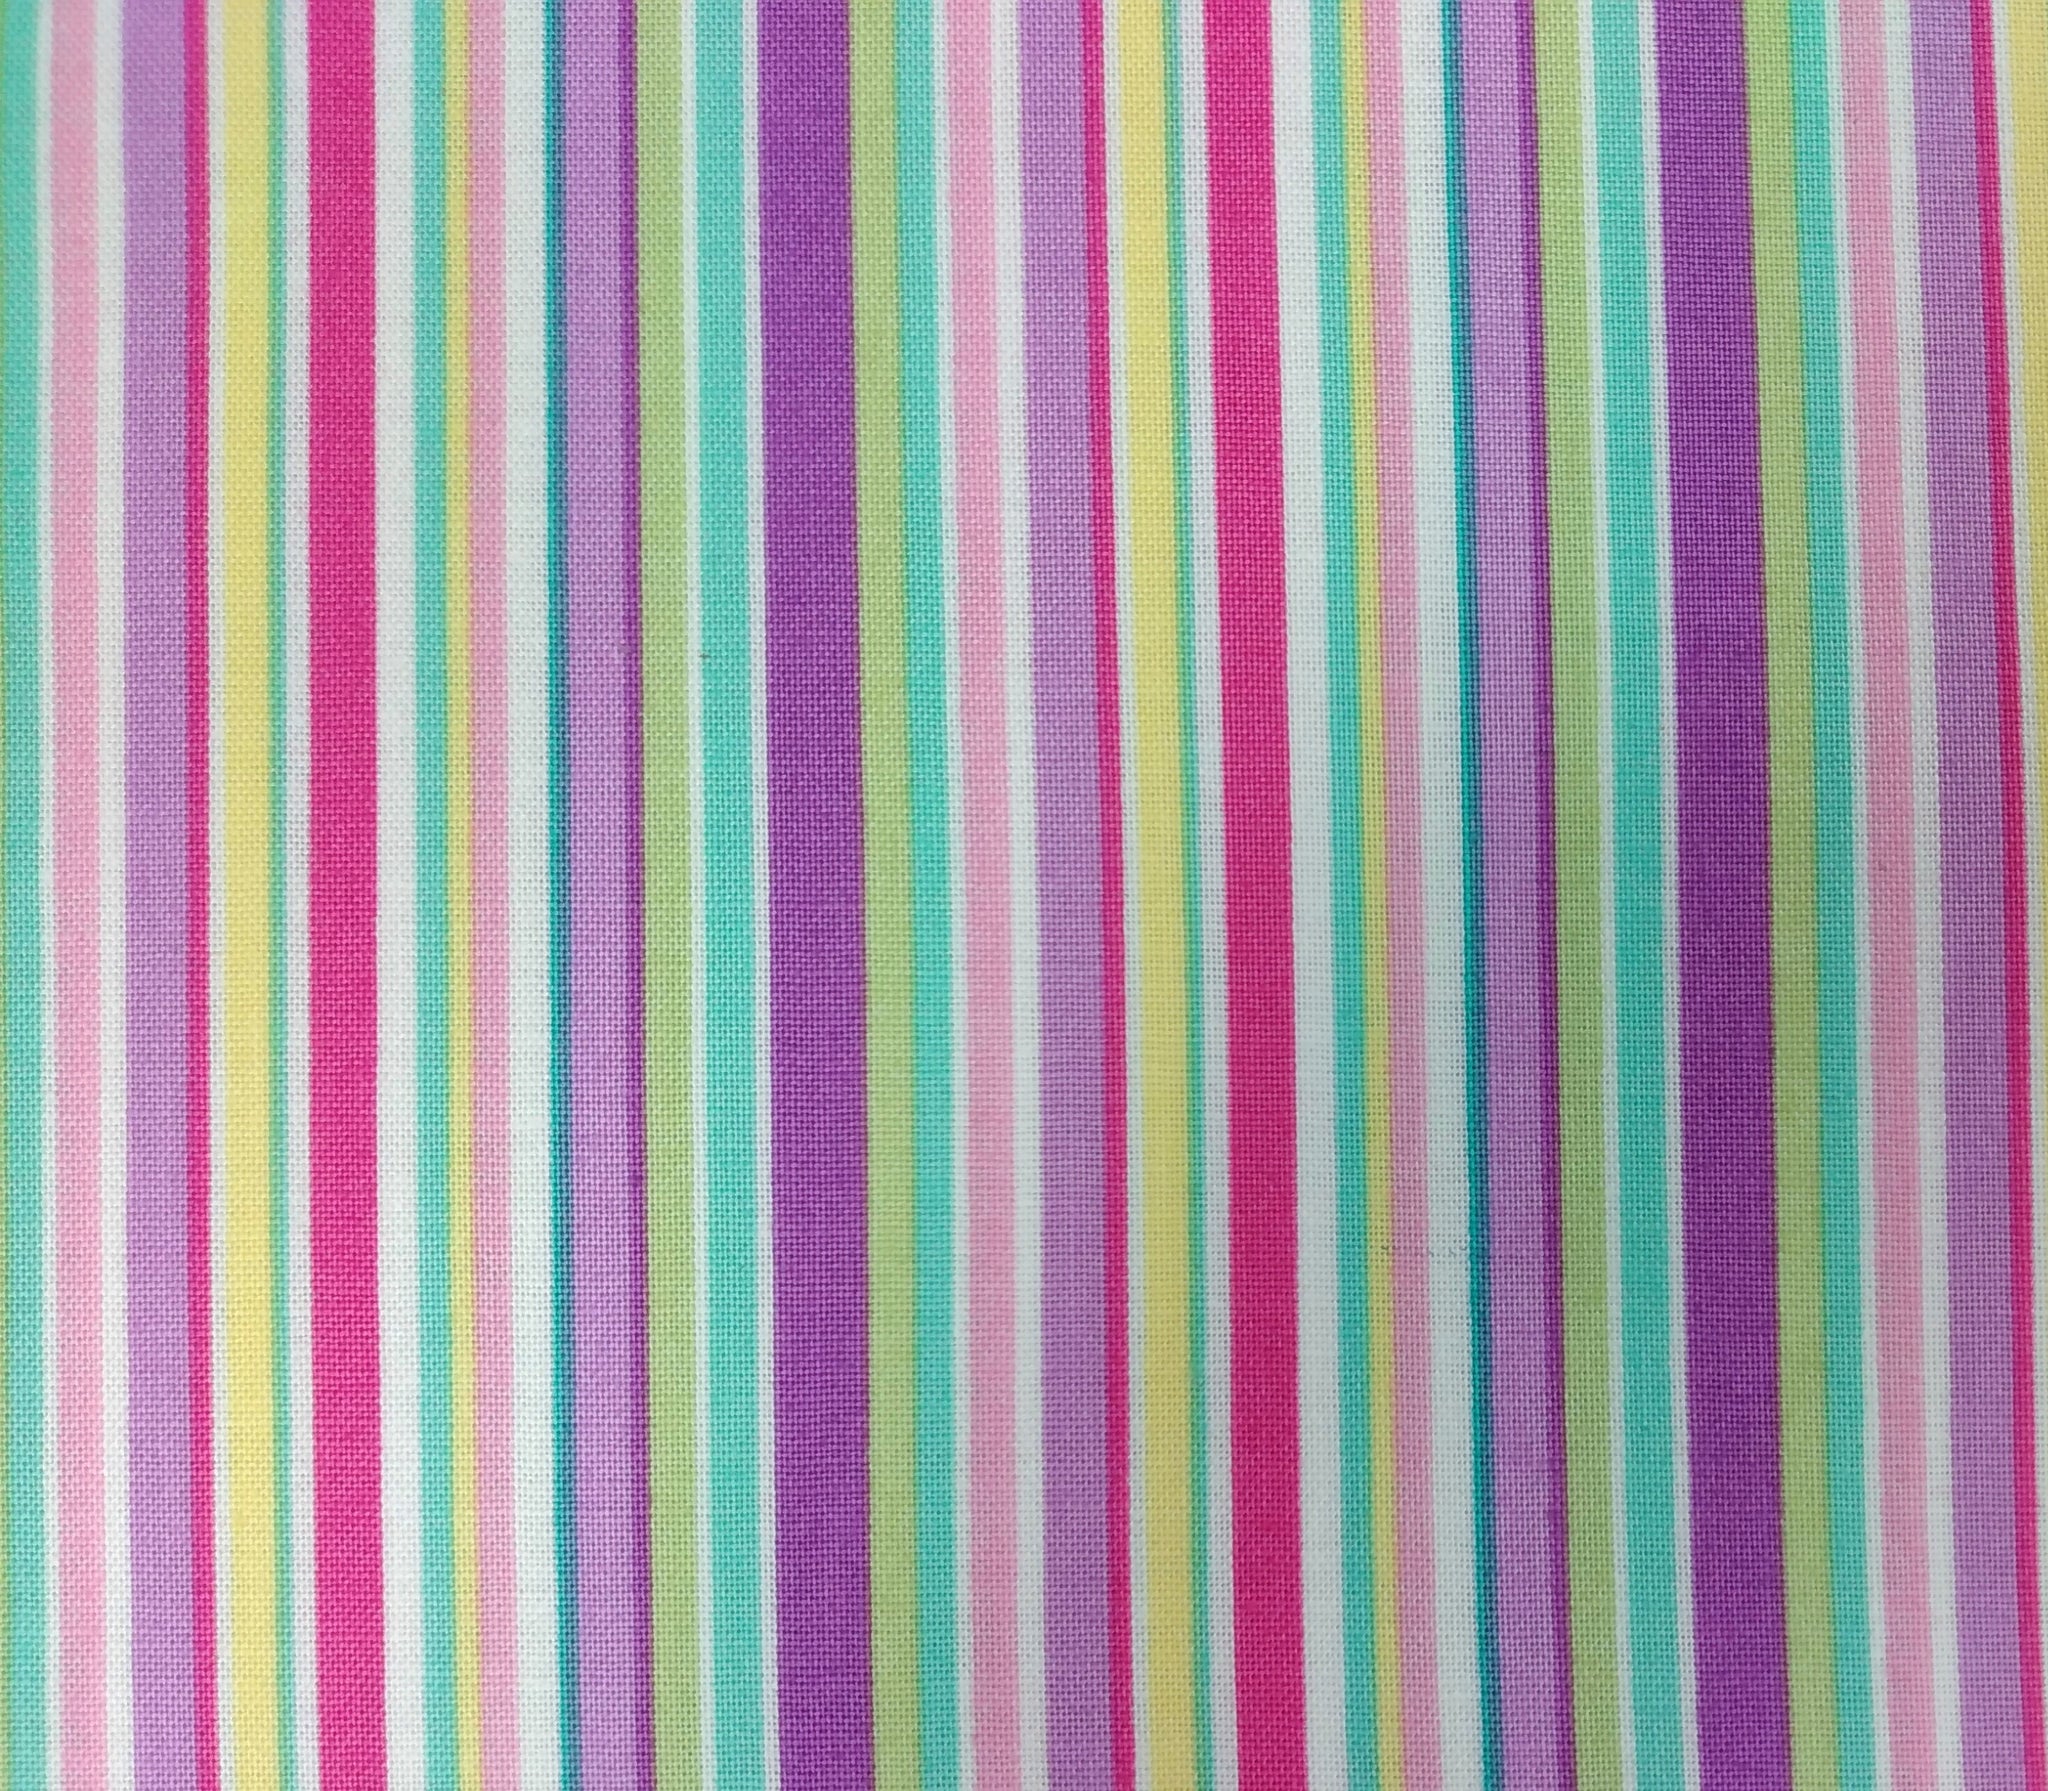 Dreamland - Barcode Stripe by Northcott 1/2yd Cuts